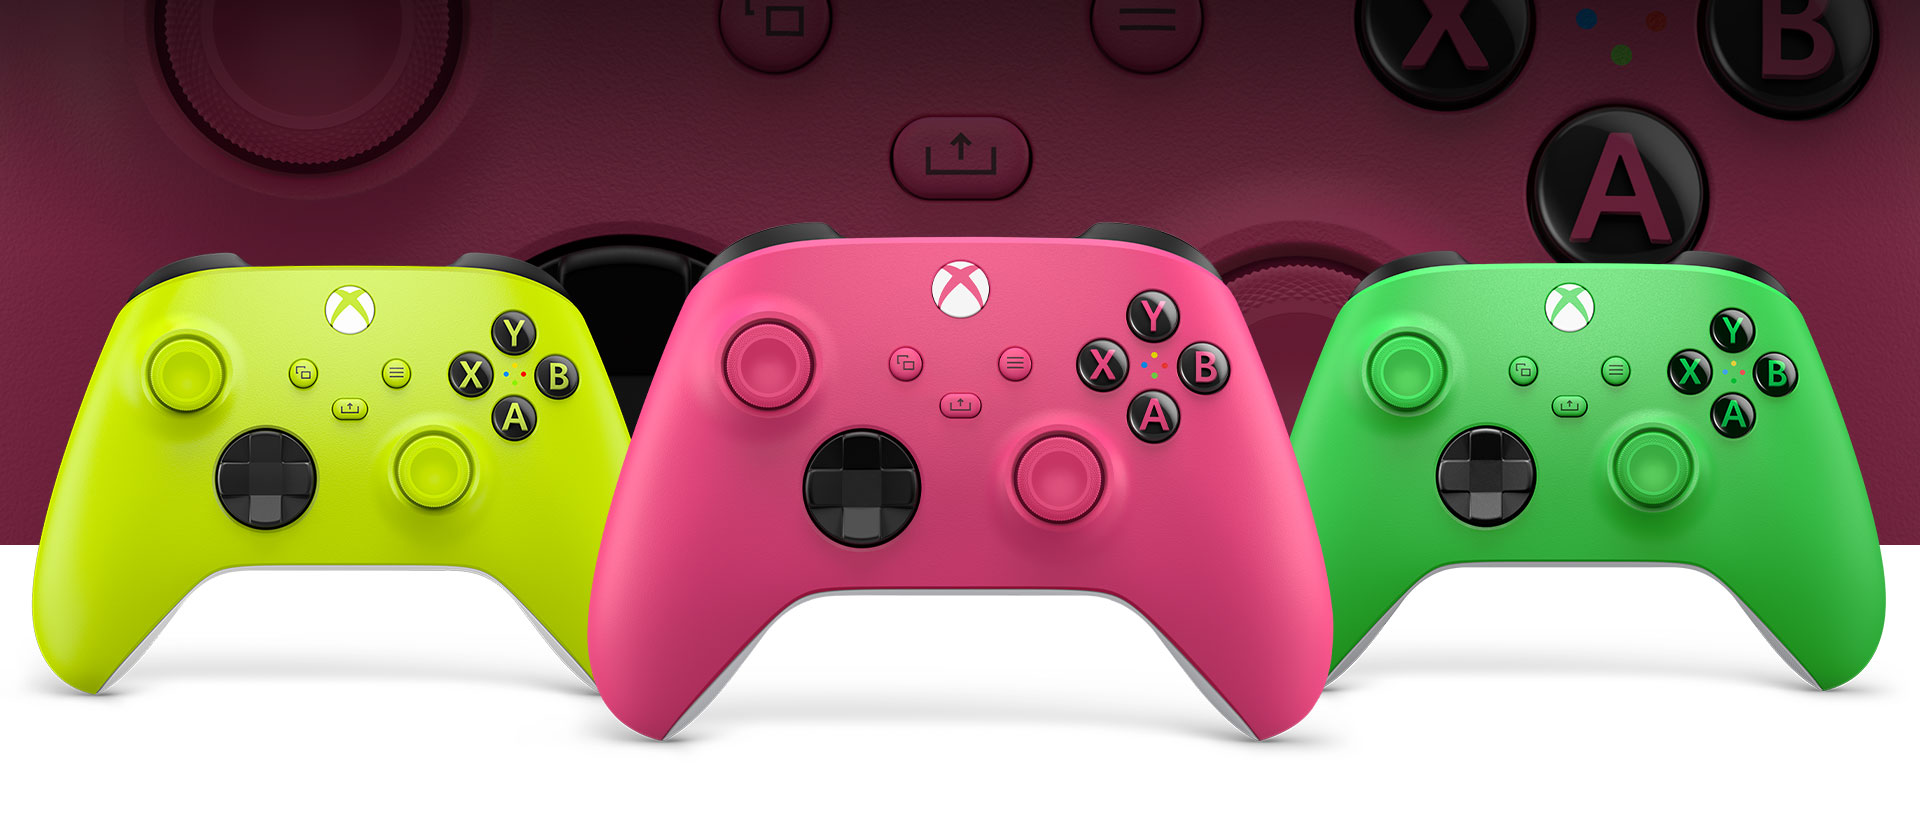 Xbox Pink Controller im Vordergrund, Volt links daneben und Green rechts daneben